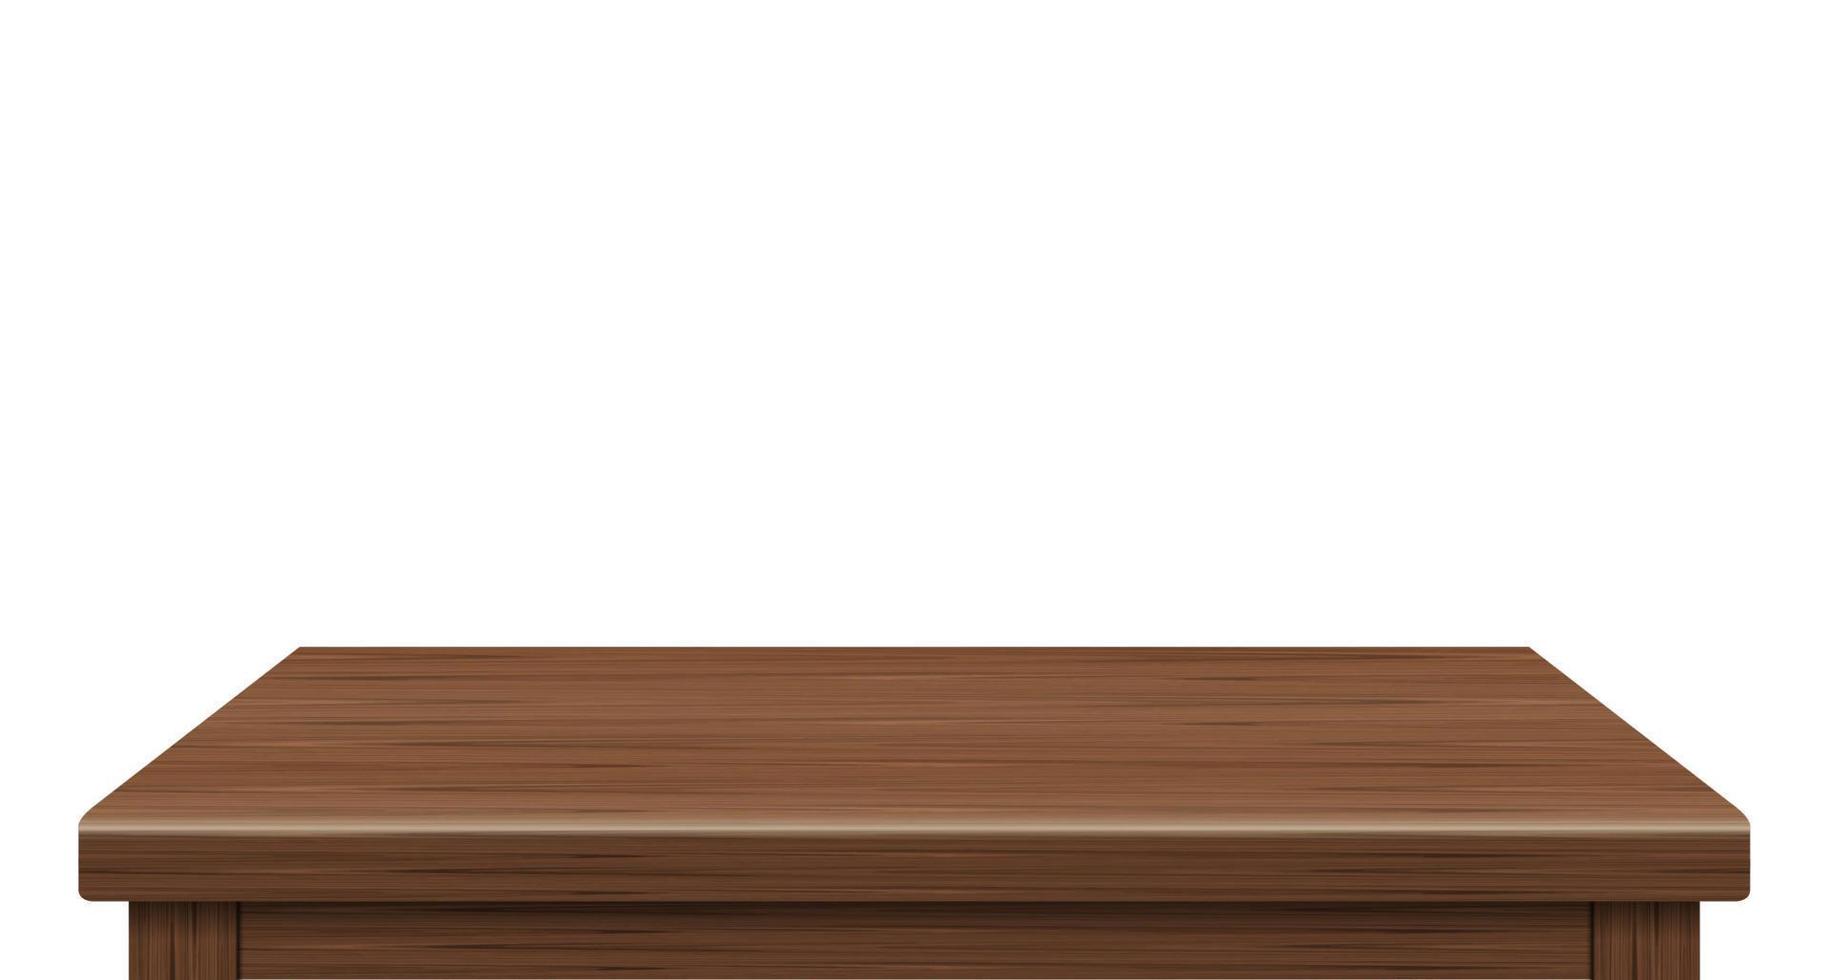 vista lateral de la mesa de madera vacía del espacio libre, para su marca de copia. utilizado para exhibir o montar productos. concepto de estilo antiguo. superficie realista marrón madera aislada sobre fondo blanco. vectores 3d